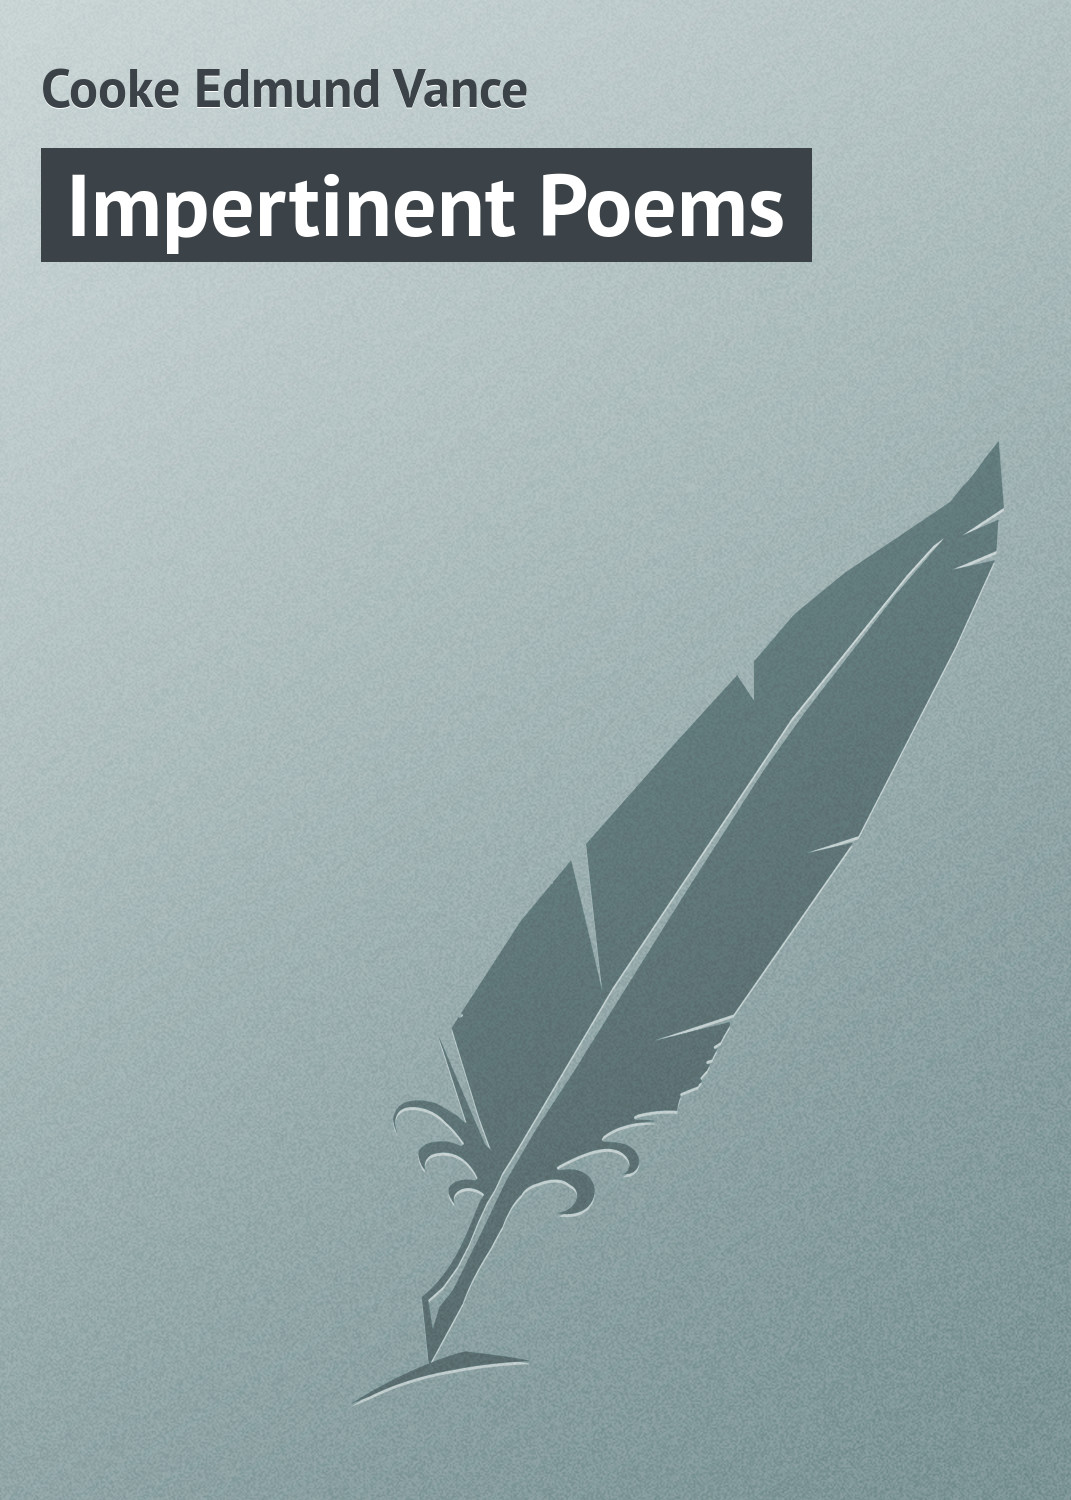 Книга Impertinent Poems из серии , созданная Edmund Cooke, может относится к жанру Зарубежная классика, Зарубежный юмор. Стоимость электронной книги Impertinent Poems с идентификатором 23166267 составляет 5.99 руб.